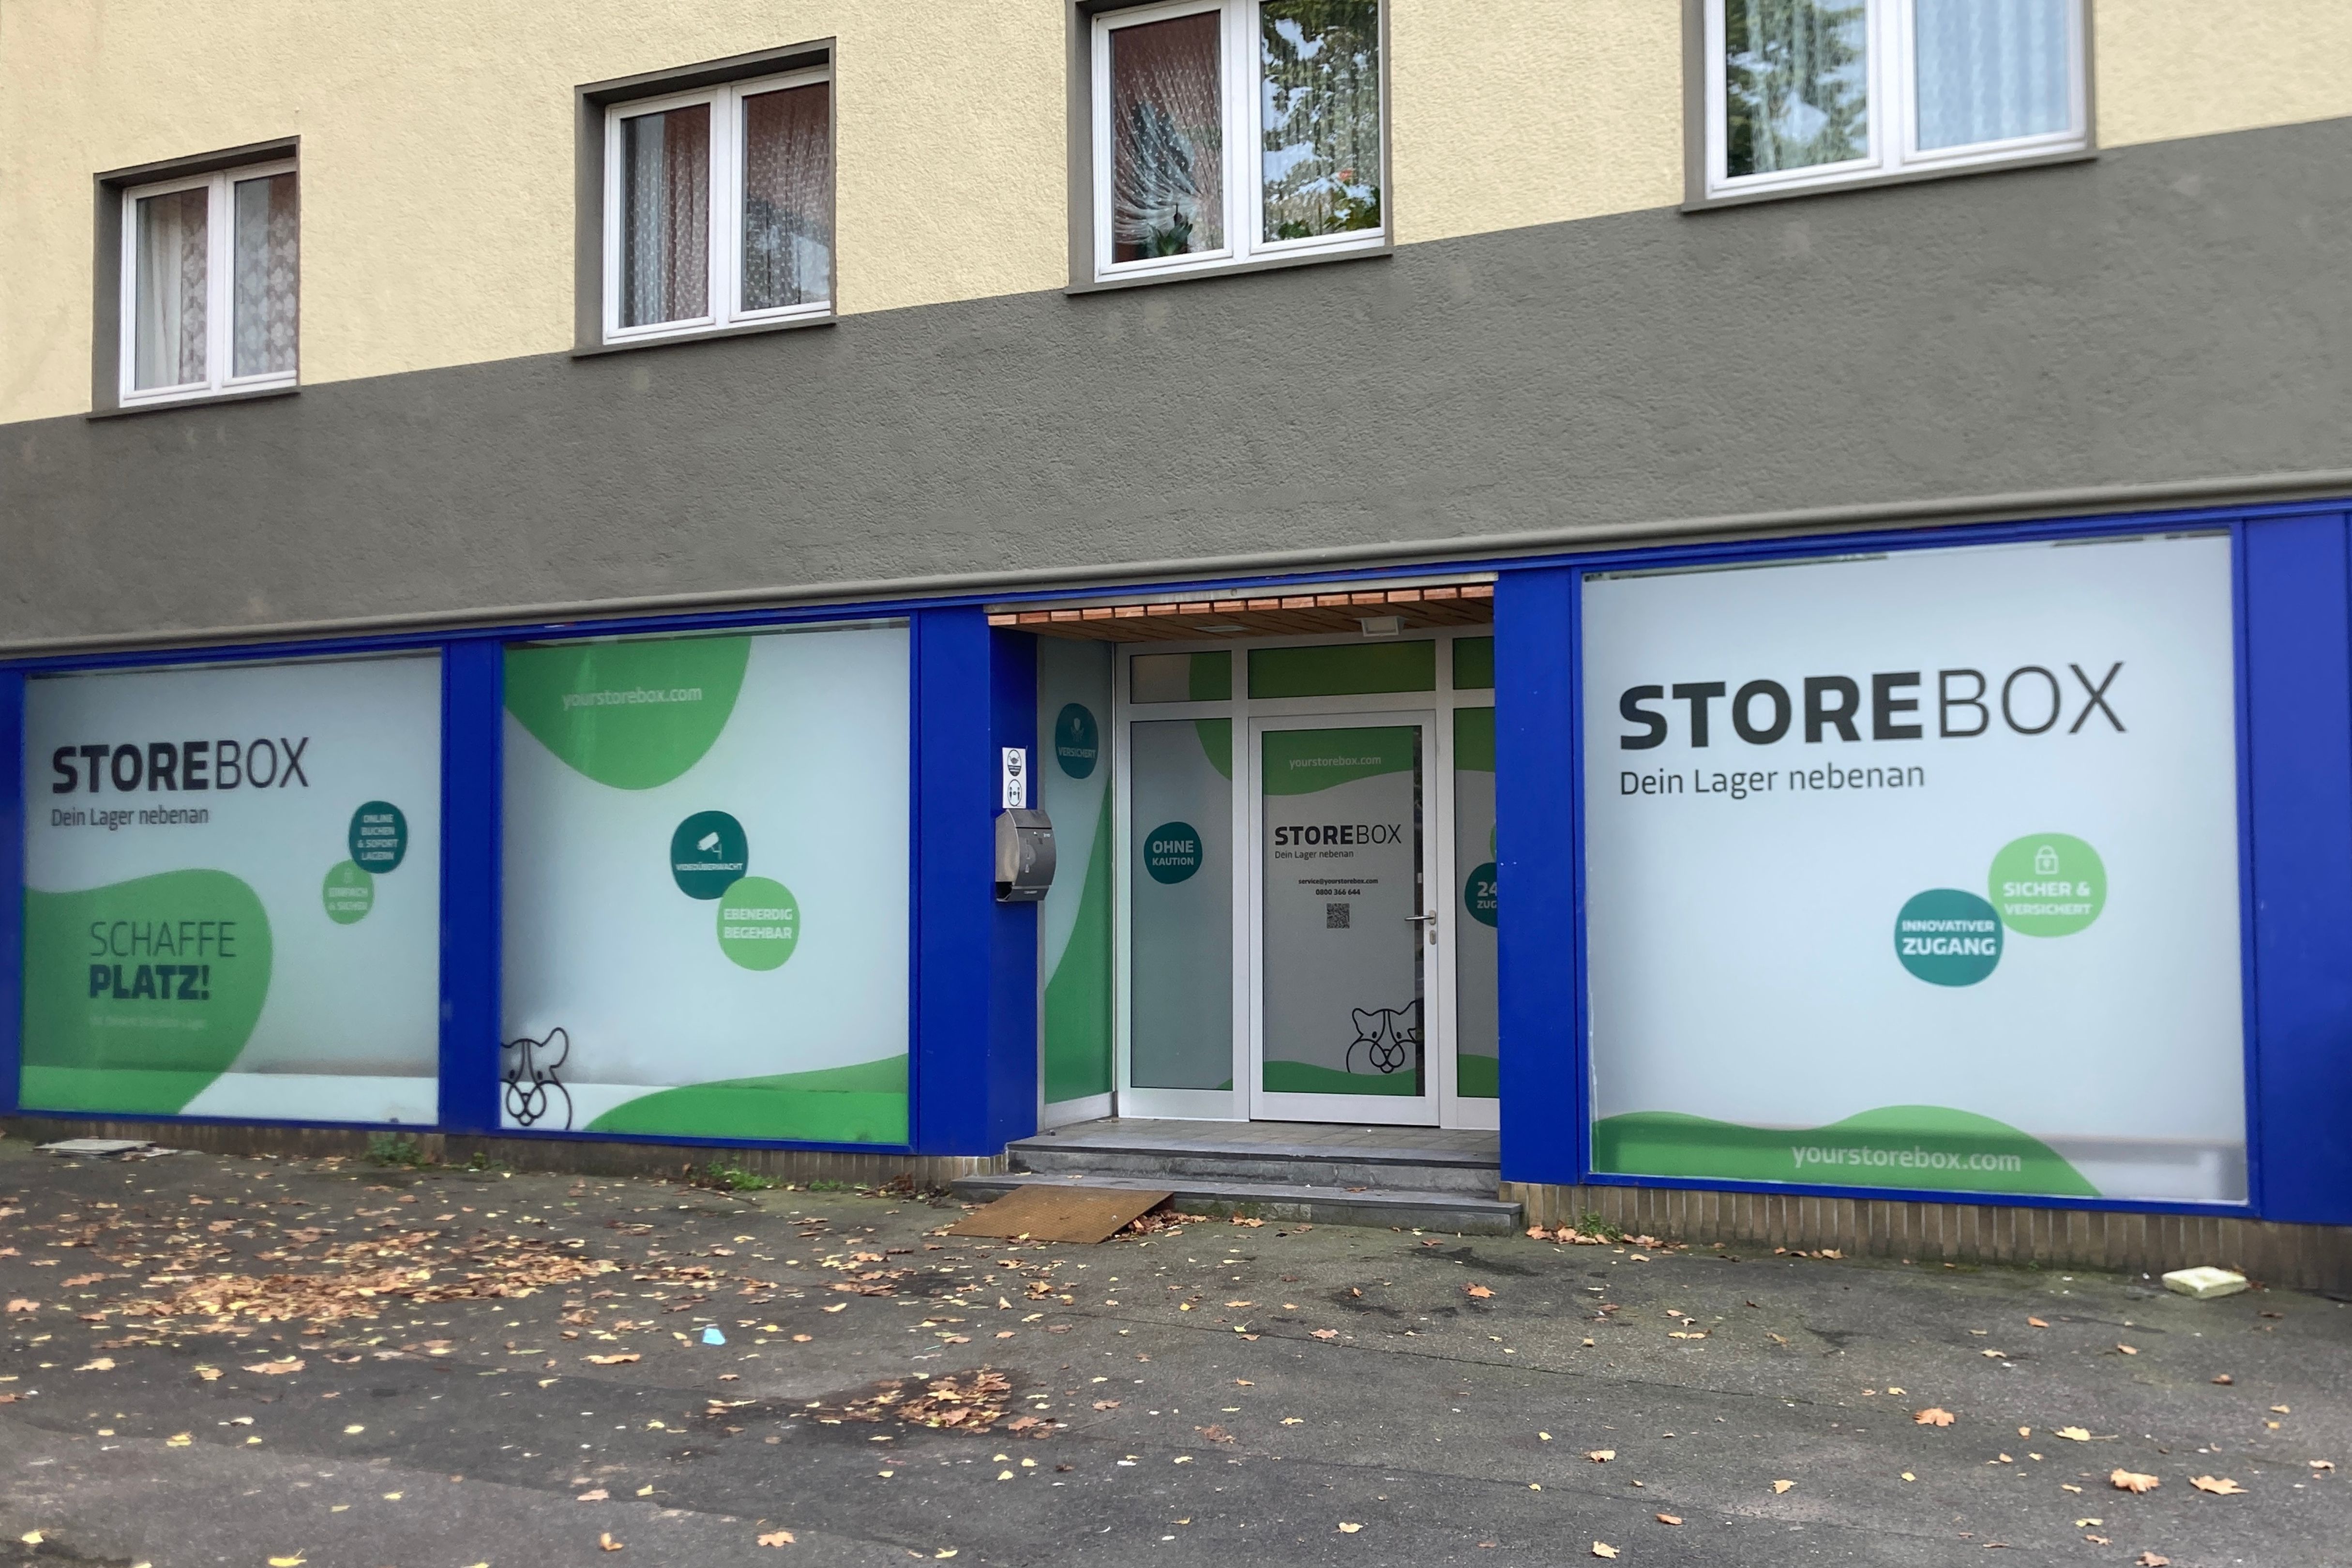 Bild 3 Storebox - Dein Lager nebenan in Mönchengladbach